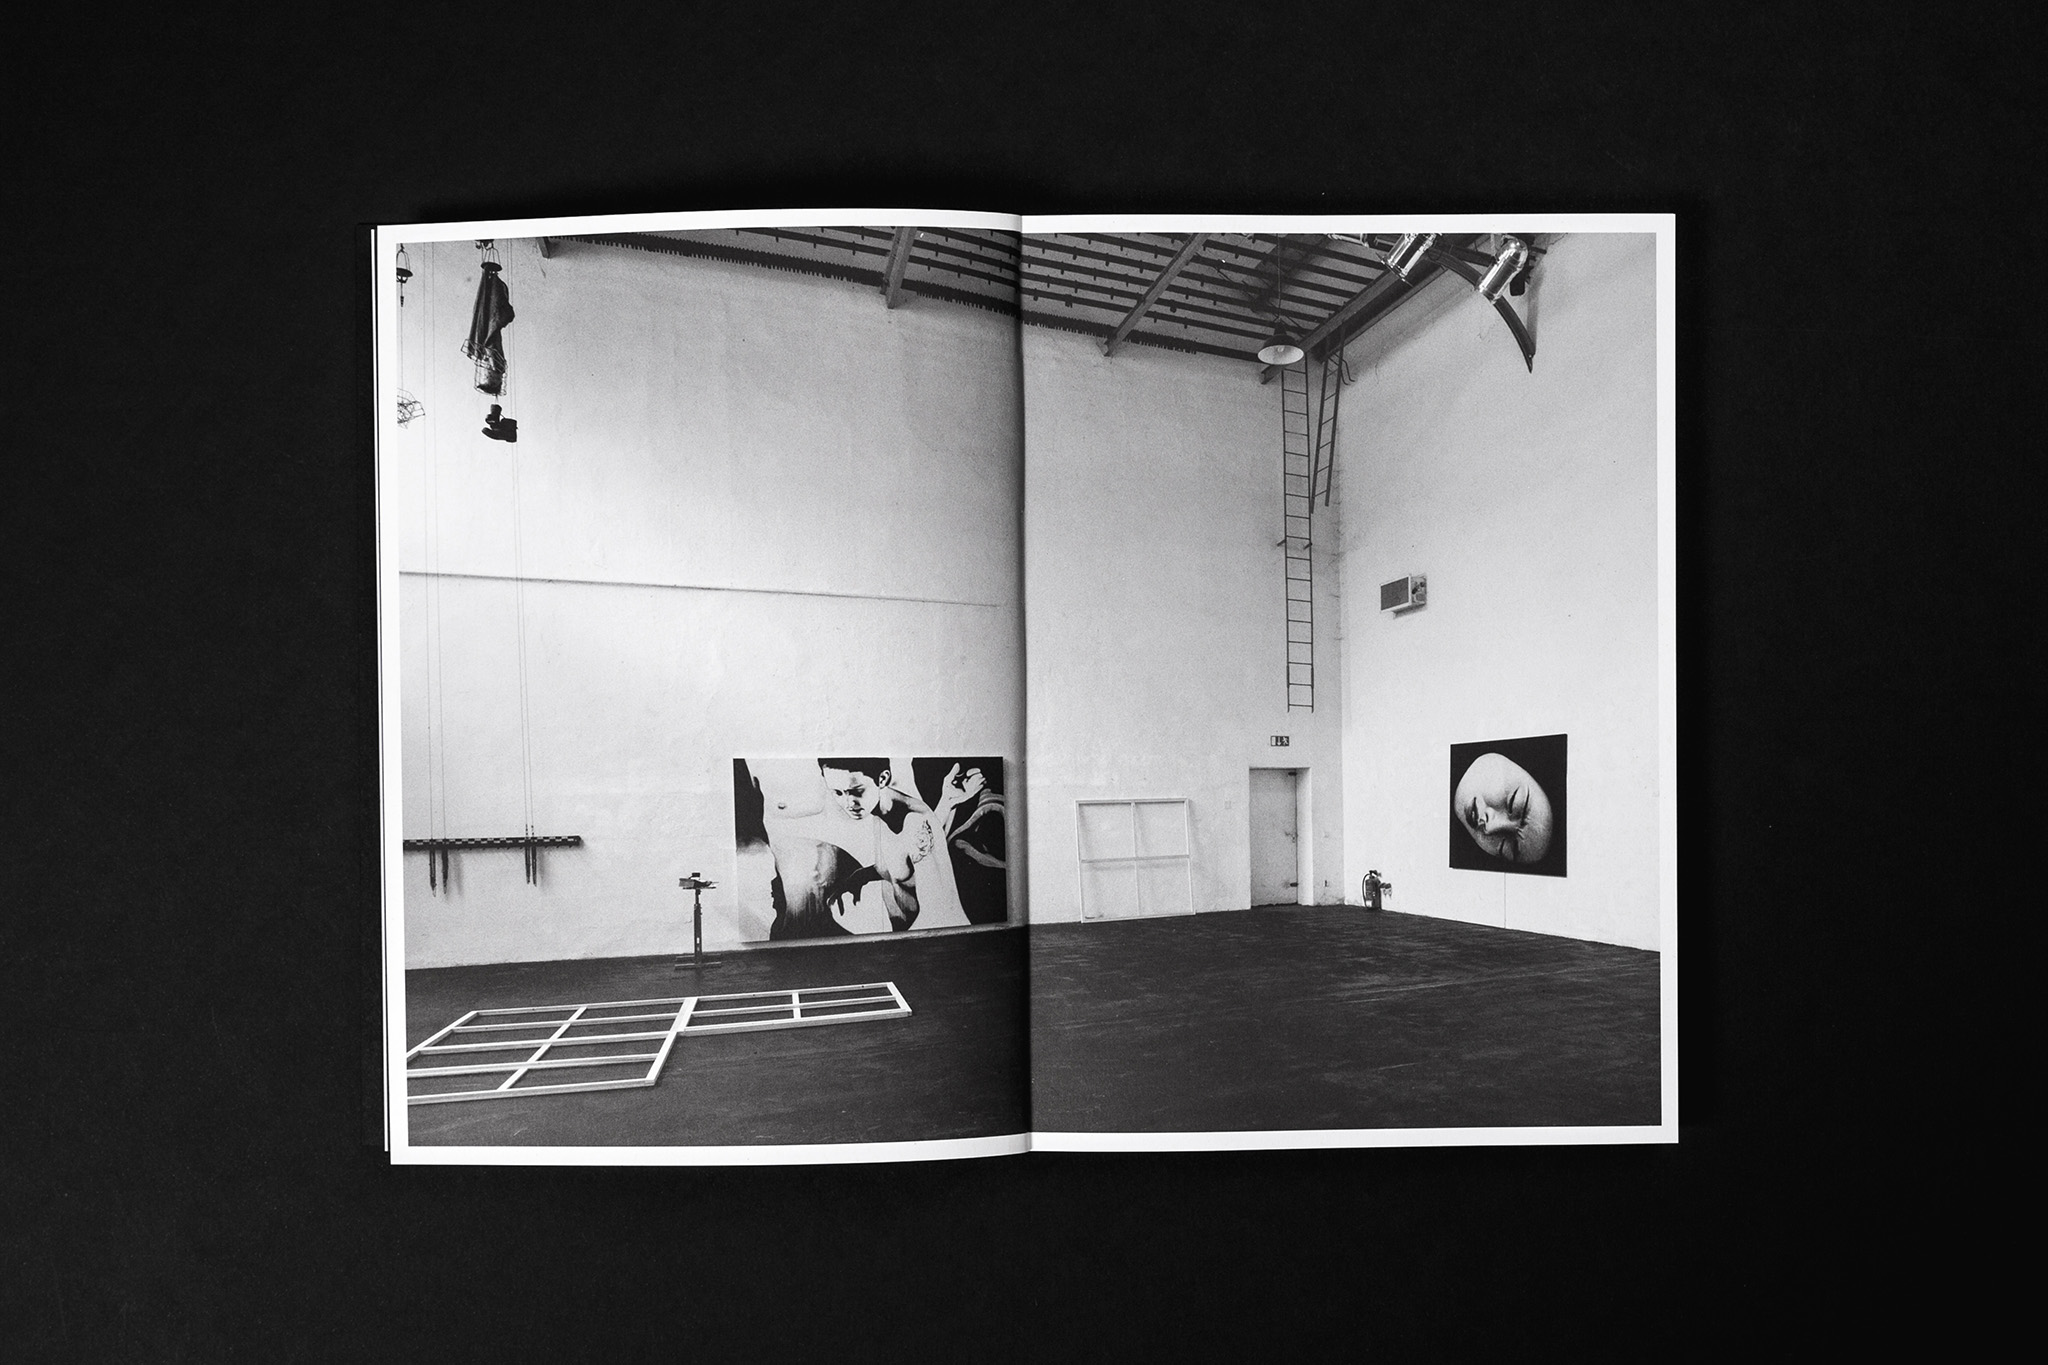 Atelieransicht im Katalog / Studio view in catalog